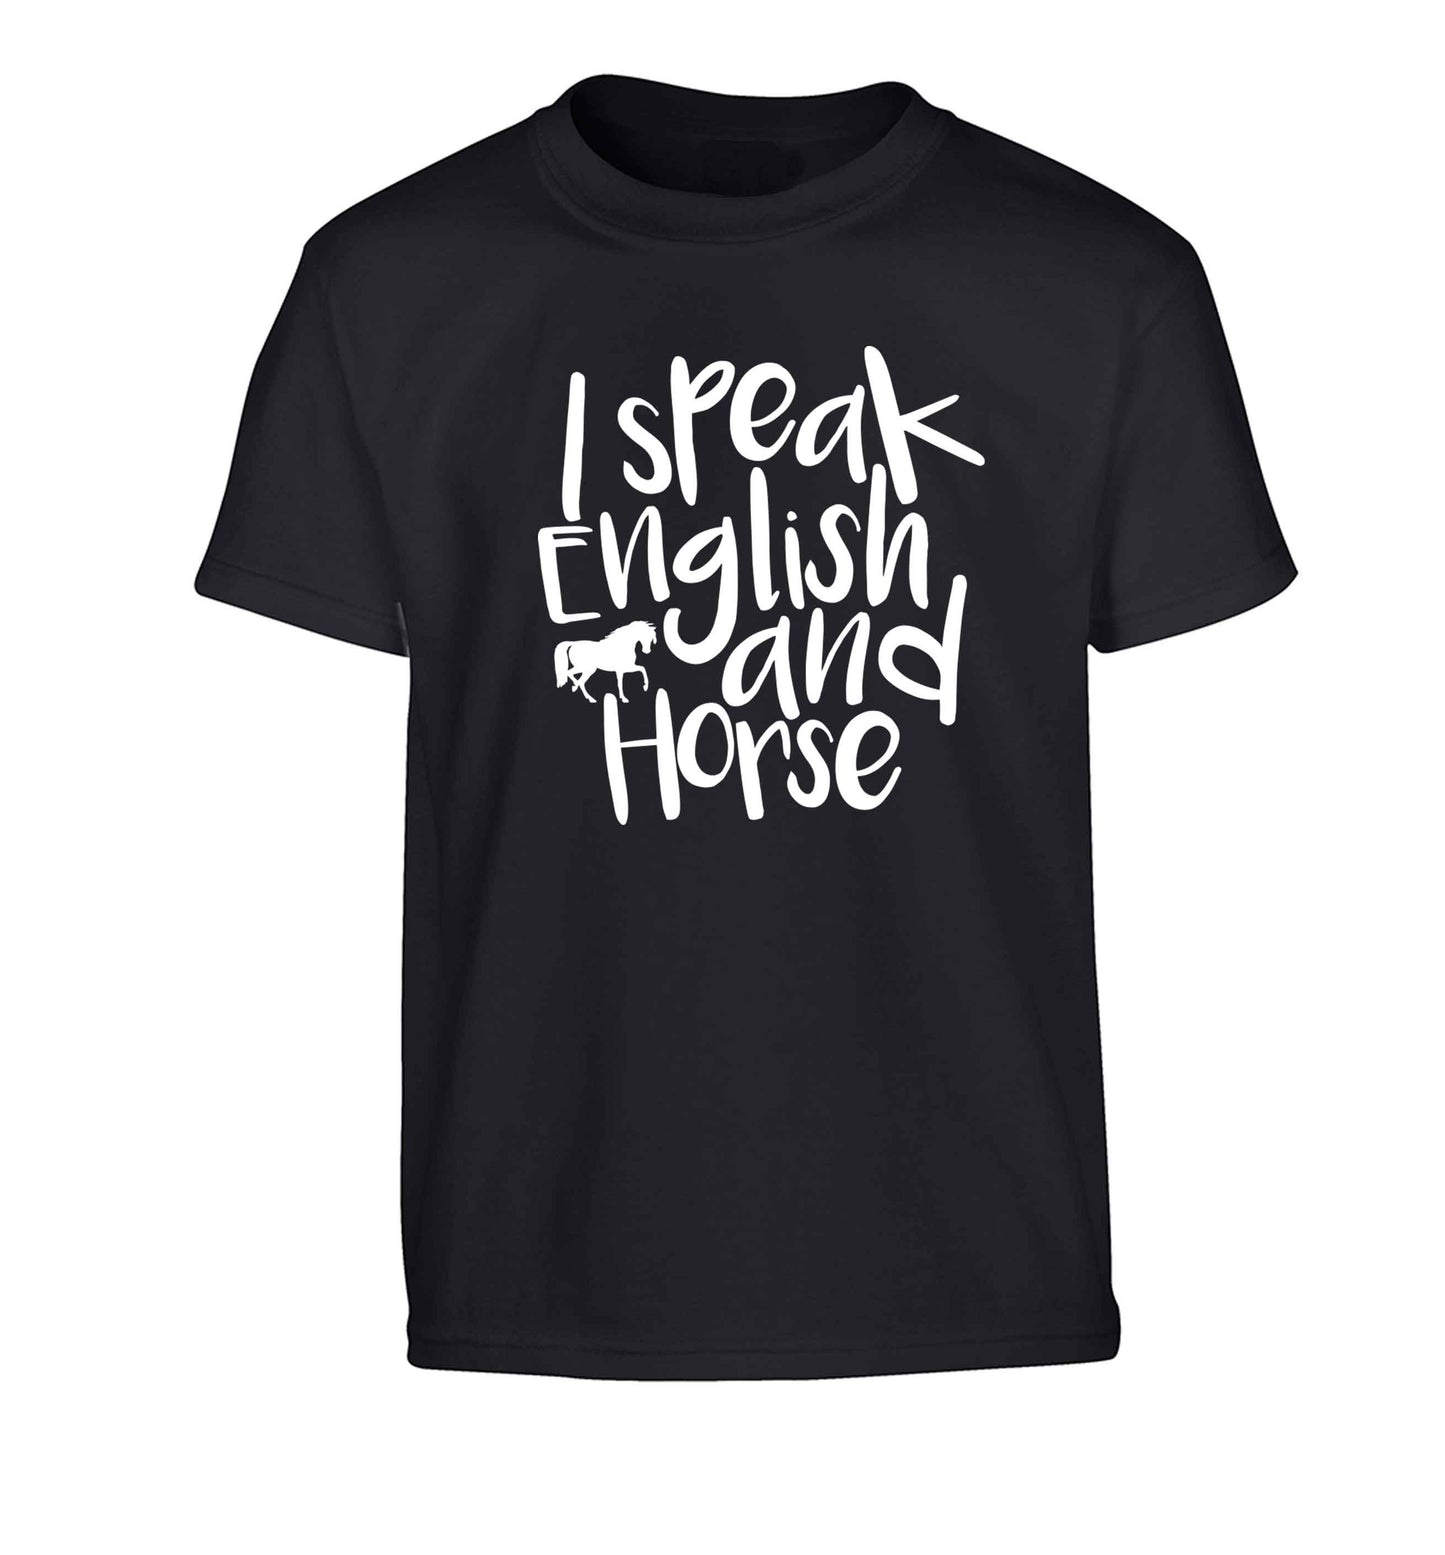 I speak English and horse Children's black Tshirt 12-13 Years